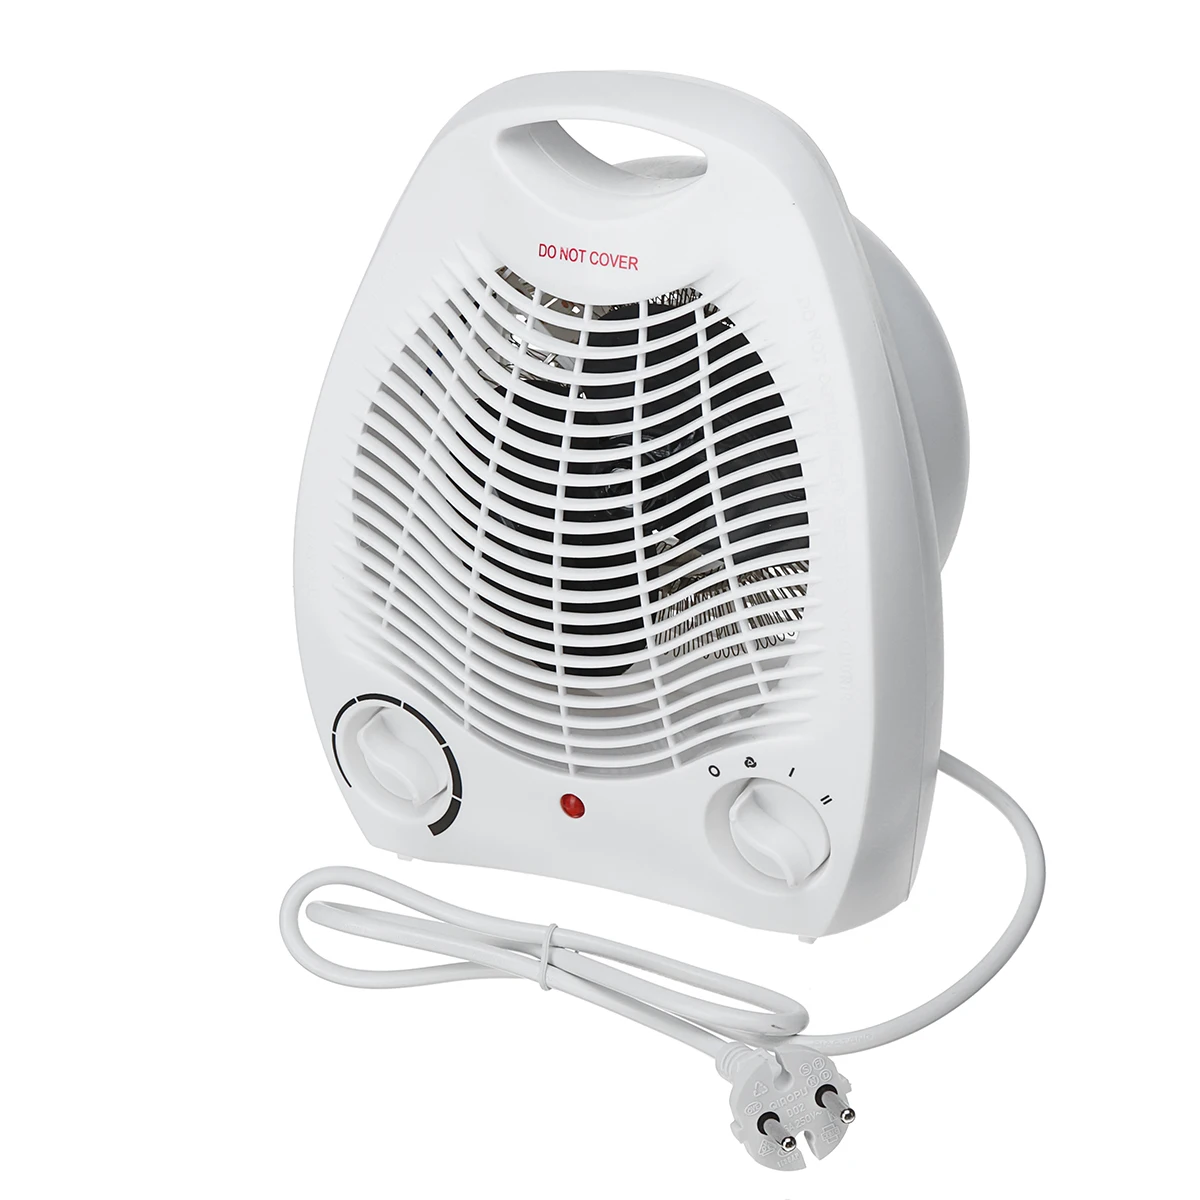 Электрическая грелка Air теплый и прохладный вентилятор 2000 Вт Термостатический регулятор 2 температурных режима Регулируемый комнатный или